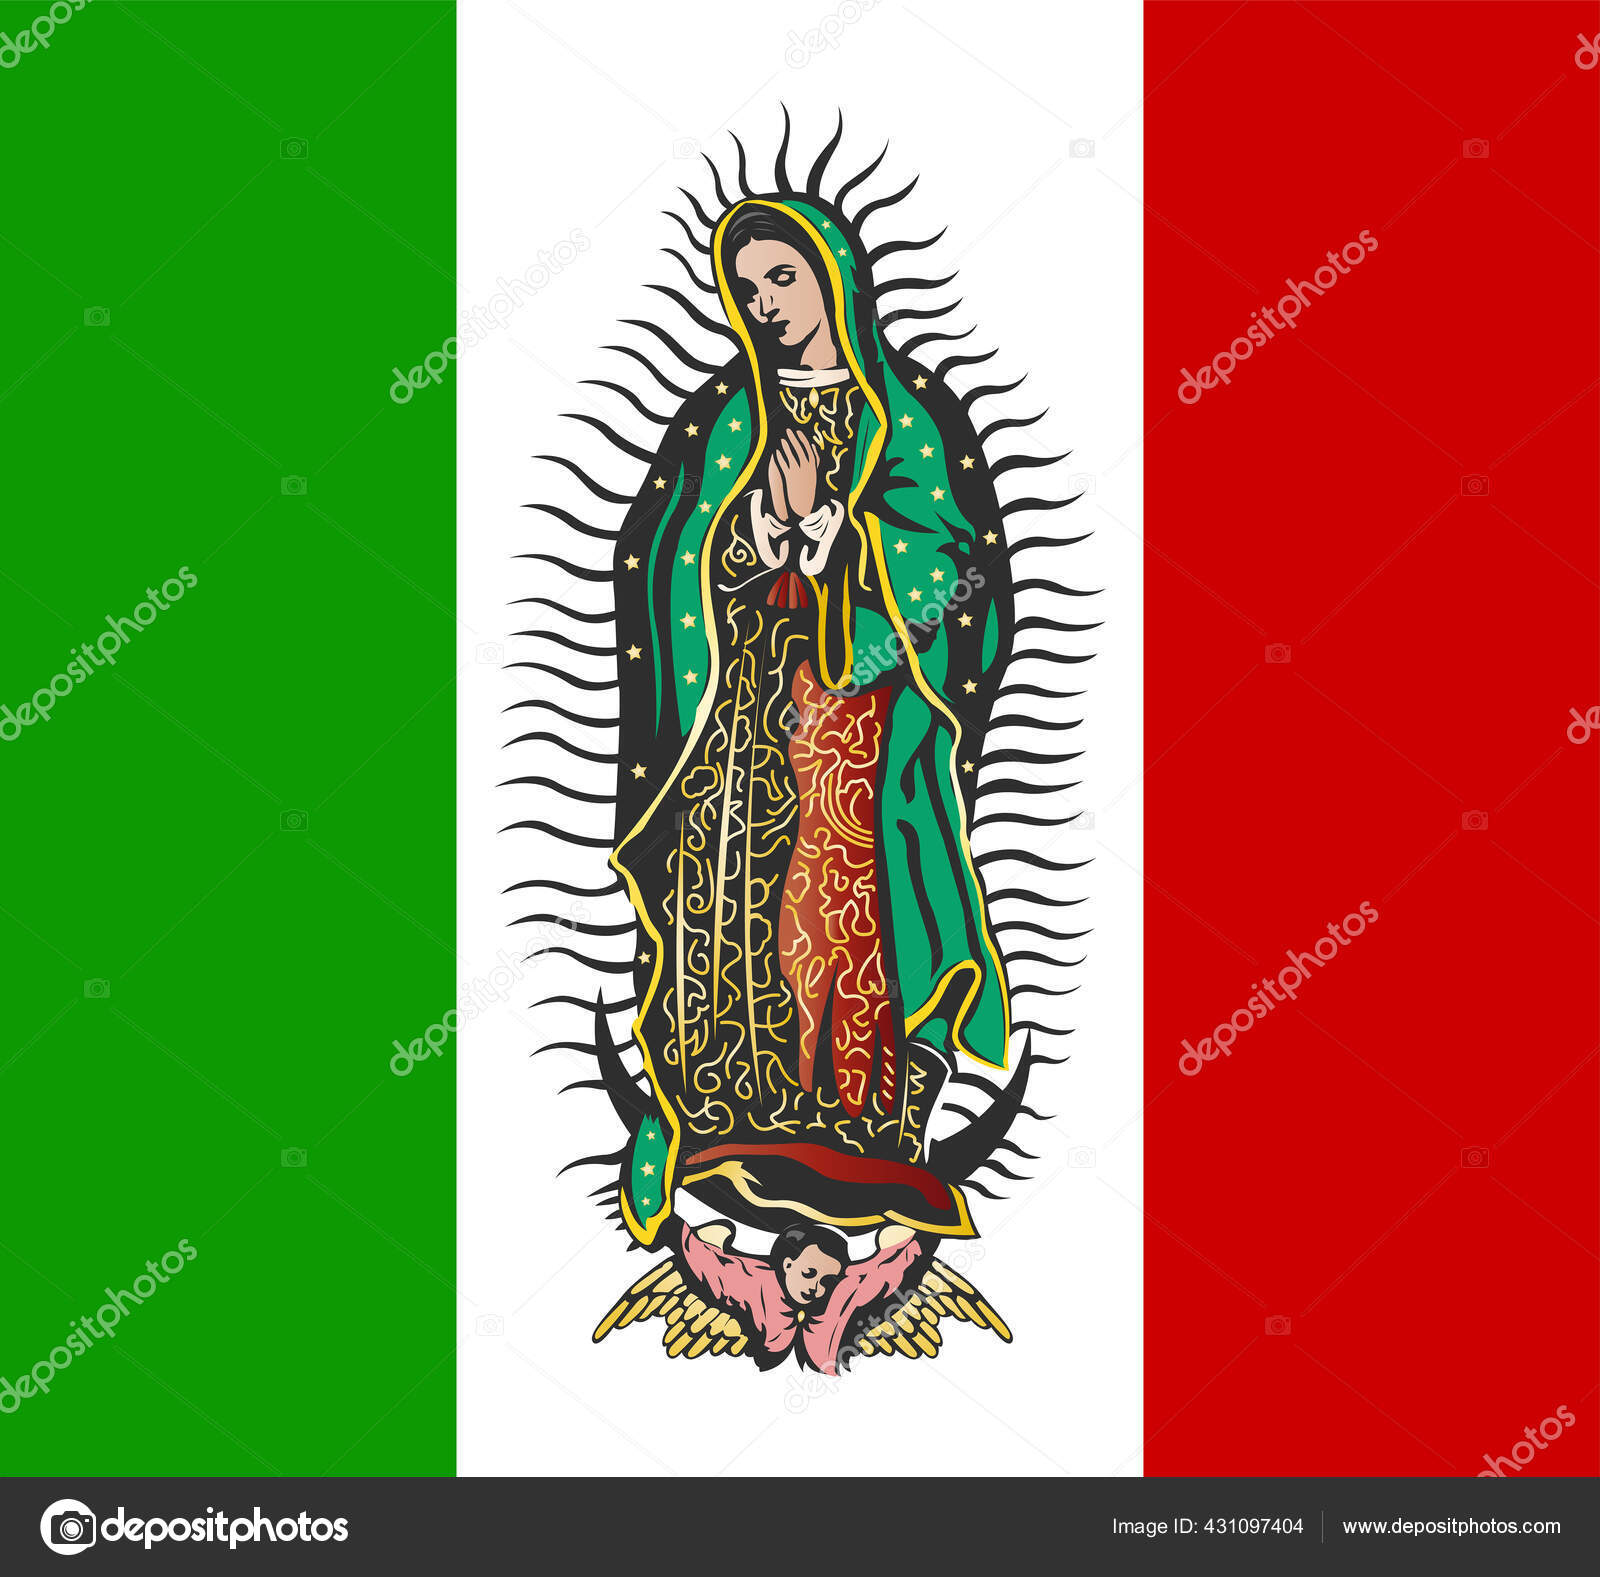 グアダルーペの聖母とメキシコ国旗ベクトルイラスト — ストックベクター ©julioaldana 431097404